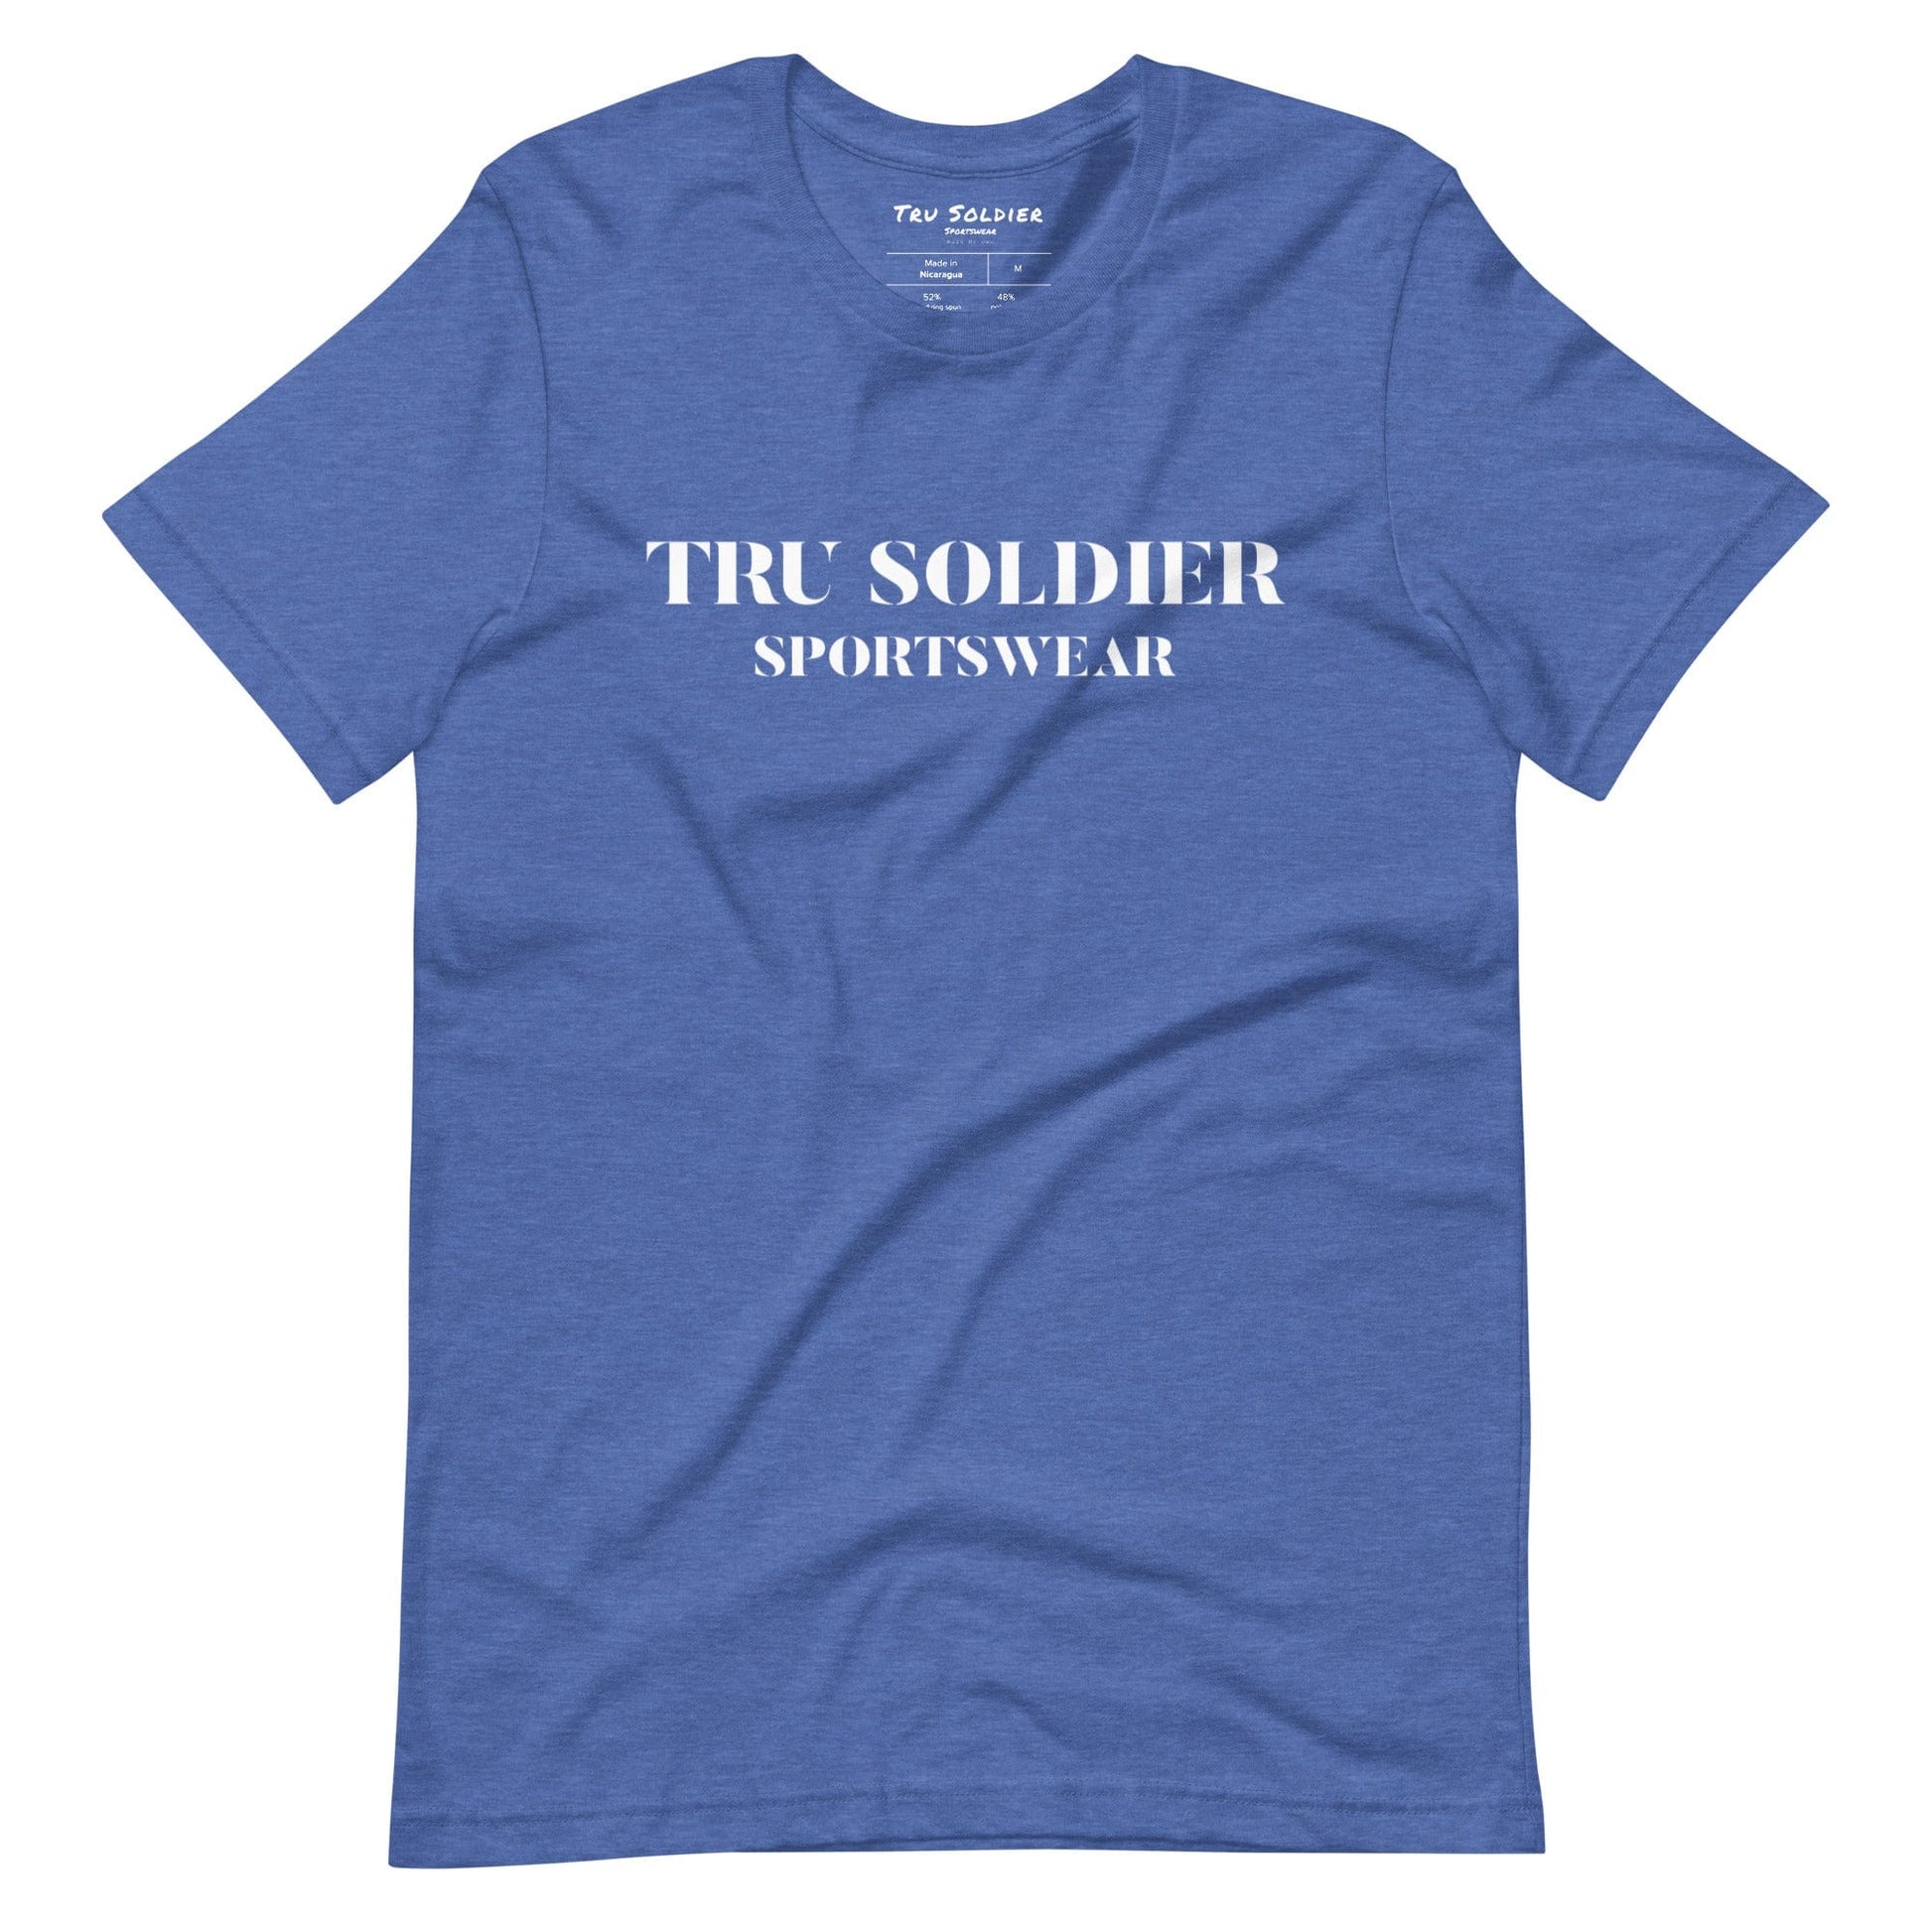 Tru Soldier Sportswear  Heather True Royal / S Tru Soldier Sportswear t-shirt